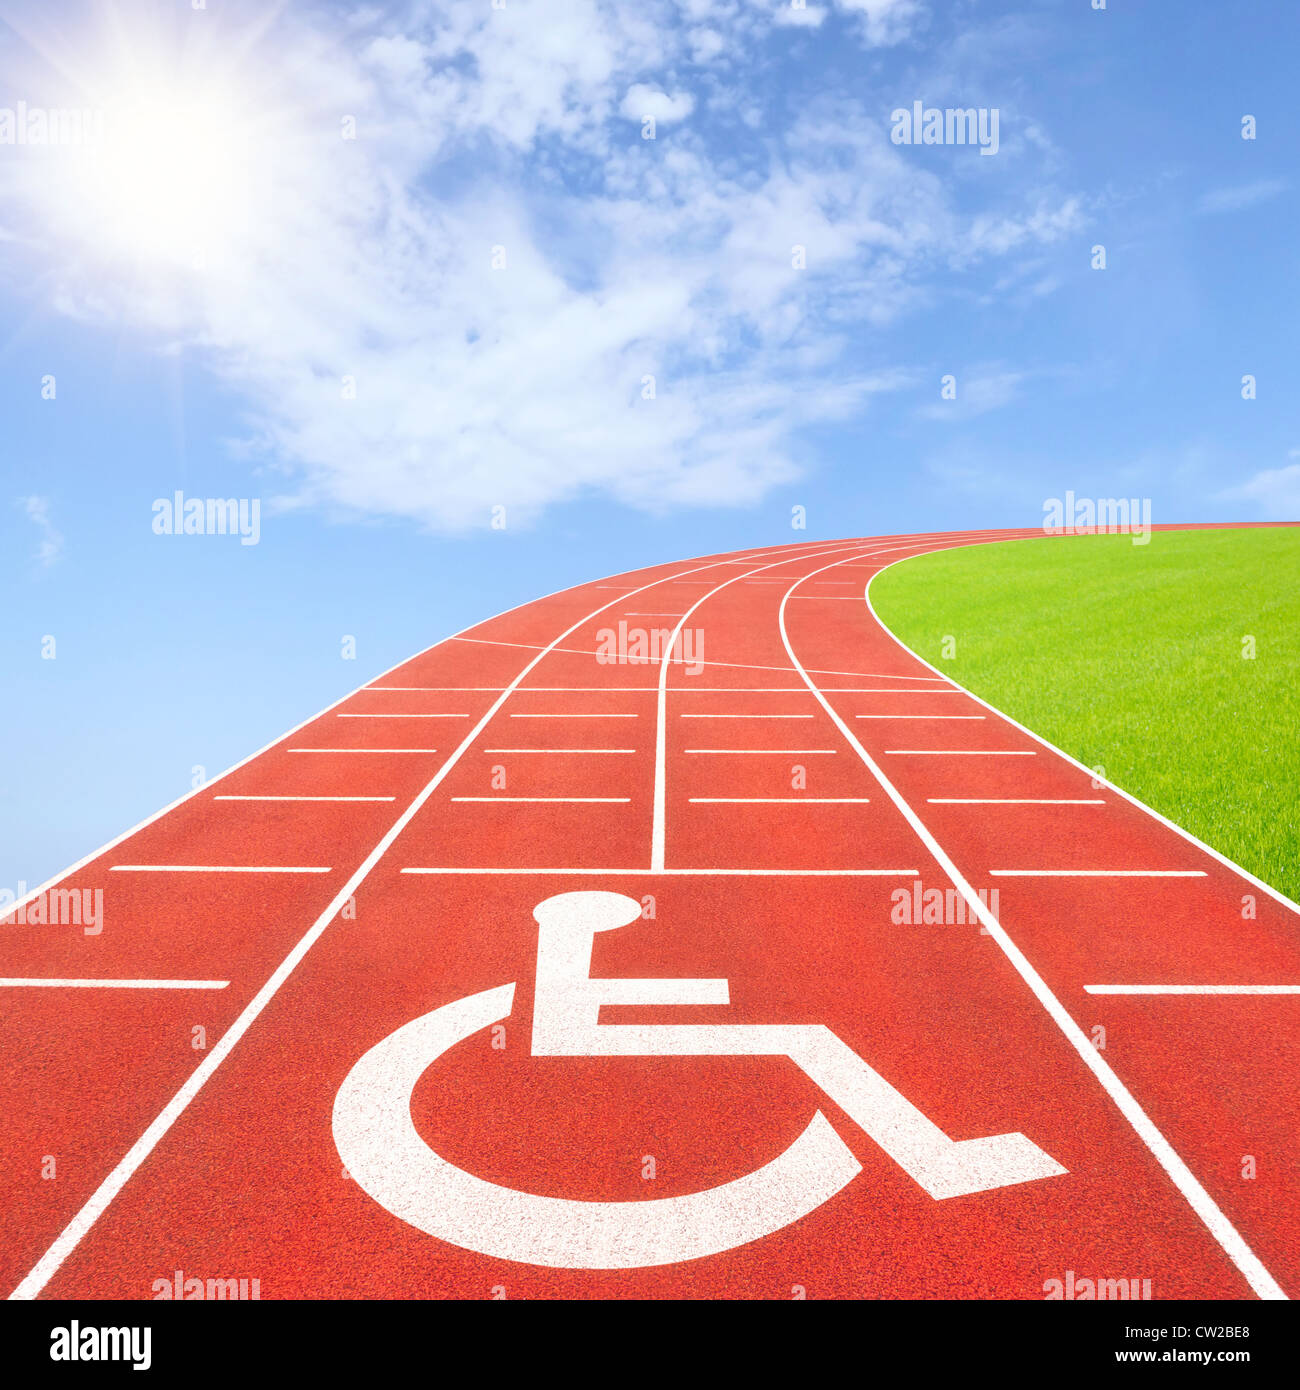 Summer Paralympics Stock Photo